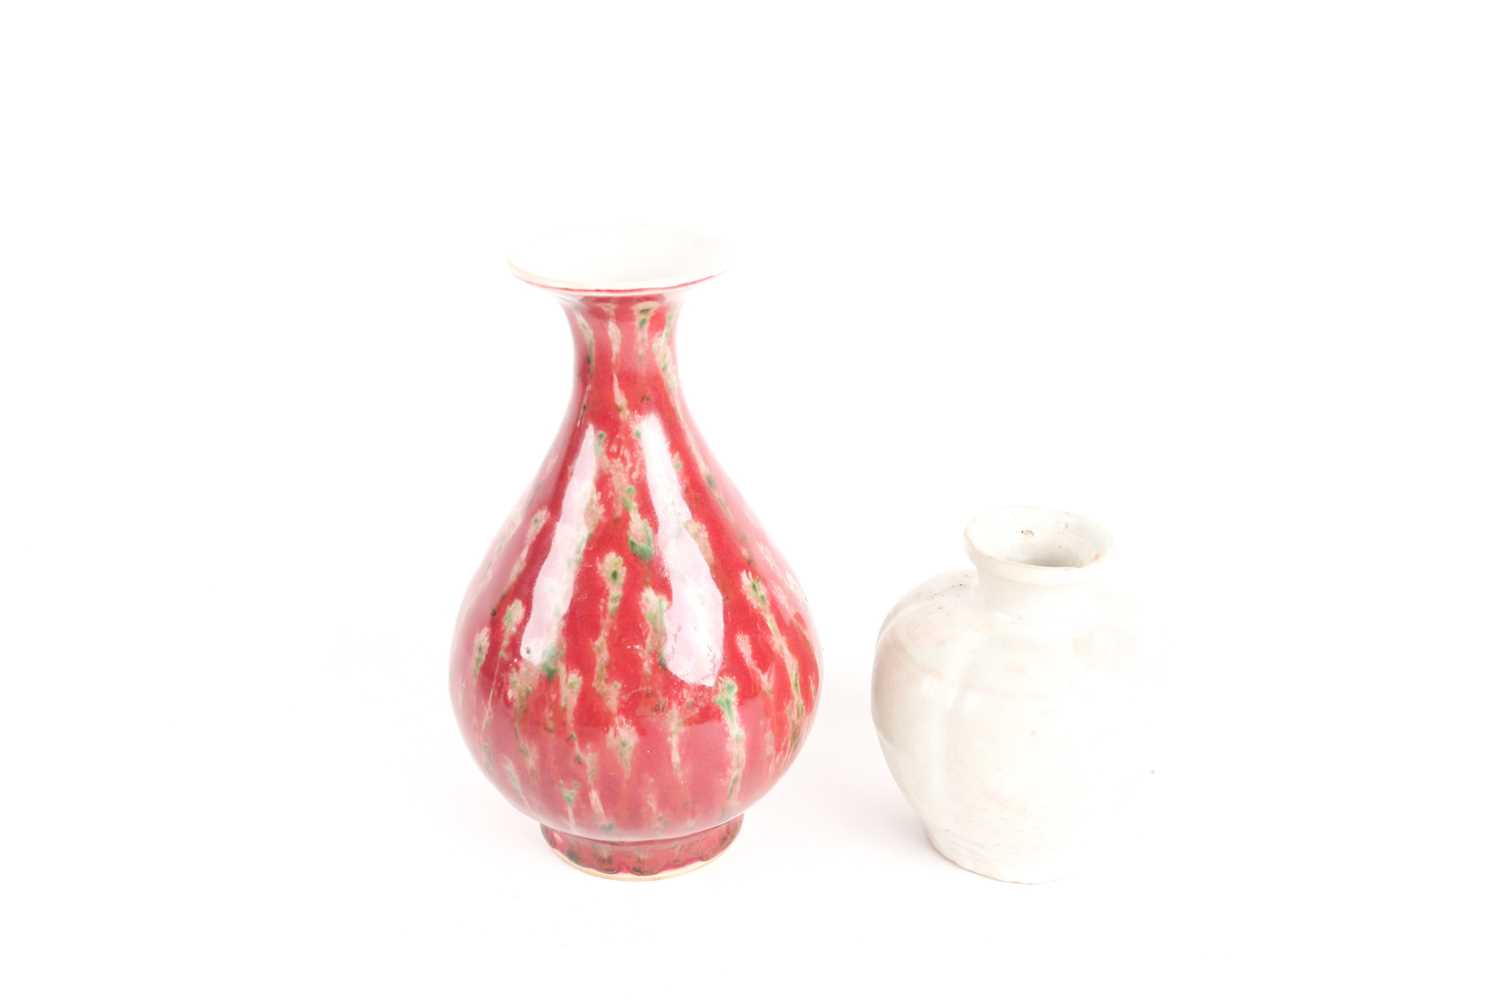 A Chinese white glazed segmented globular vase, Song dynasty, painted with underglaze red decoration - Image 6 of 6